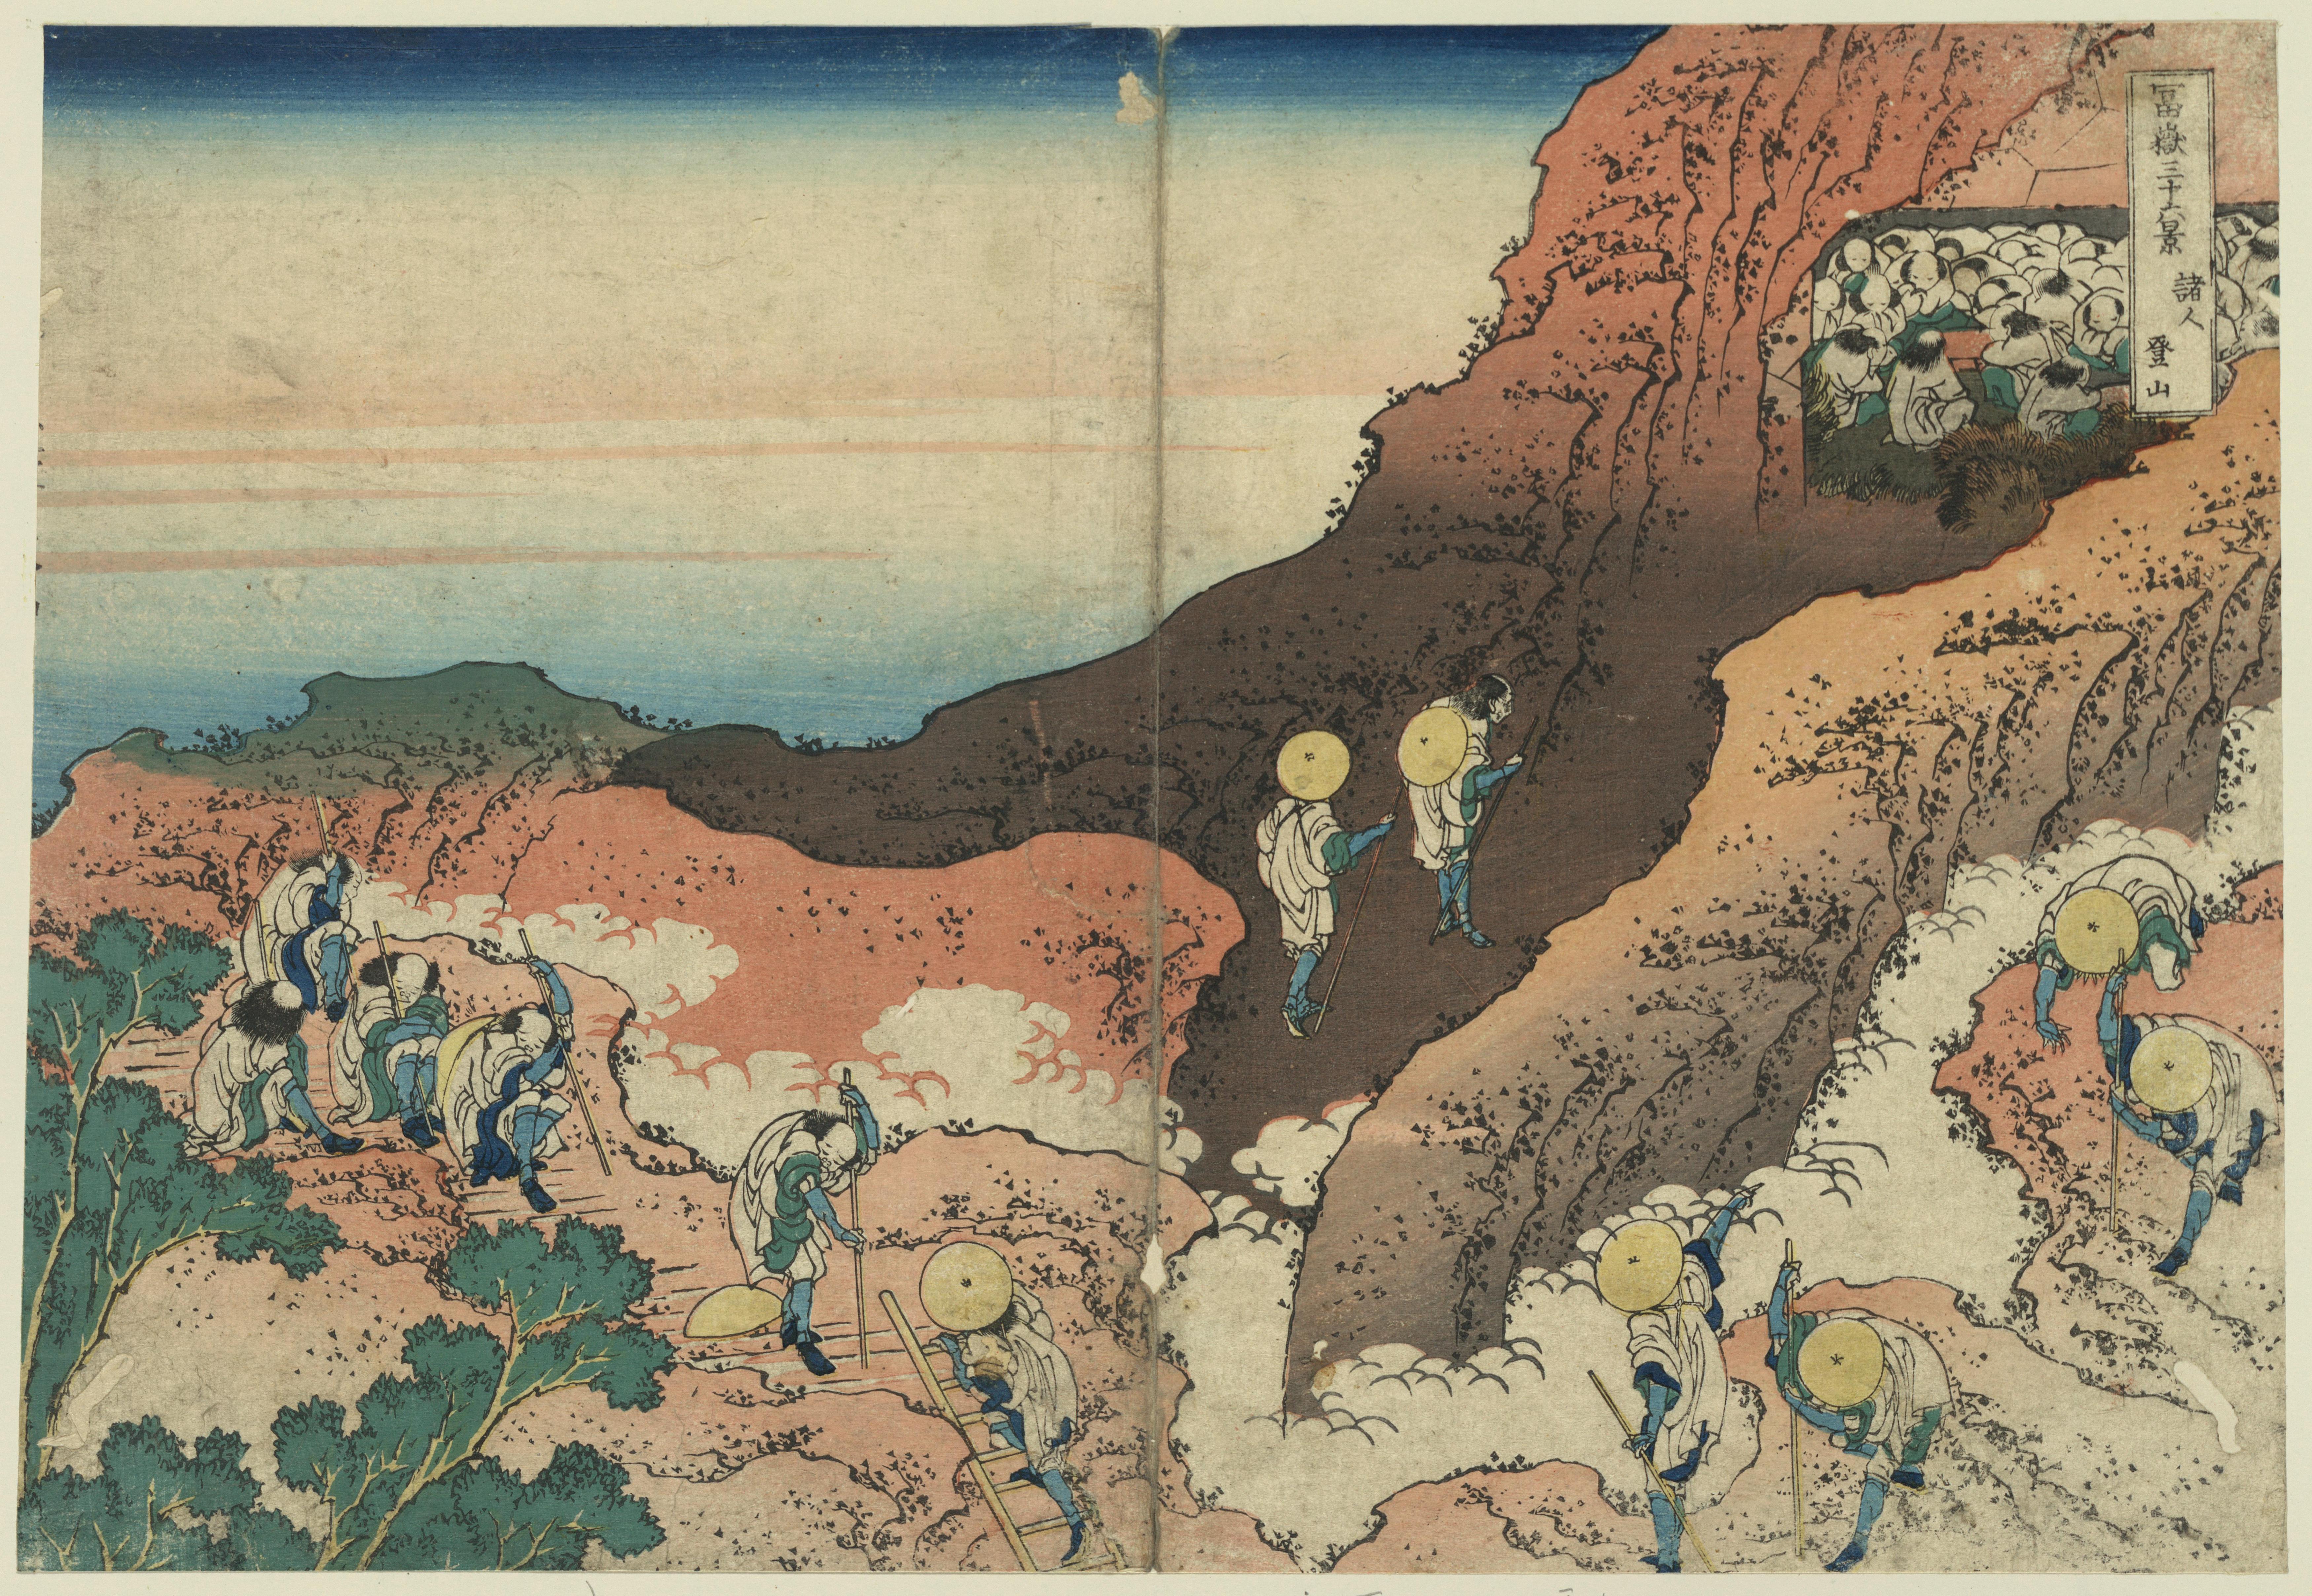 Katsushika Hokusai. Groups of Mountain Climbers, from the series Thirty-six Views of Mount Fuji